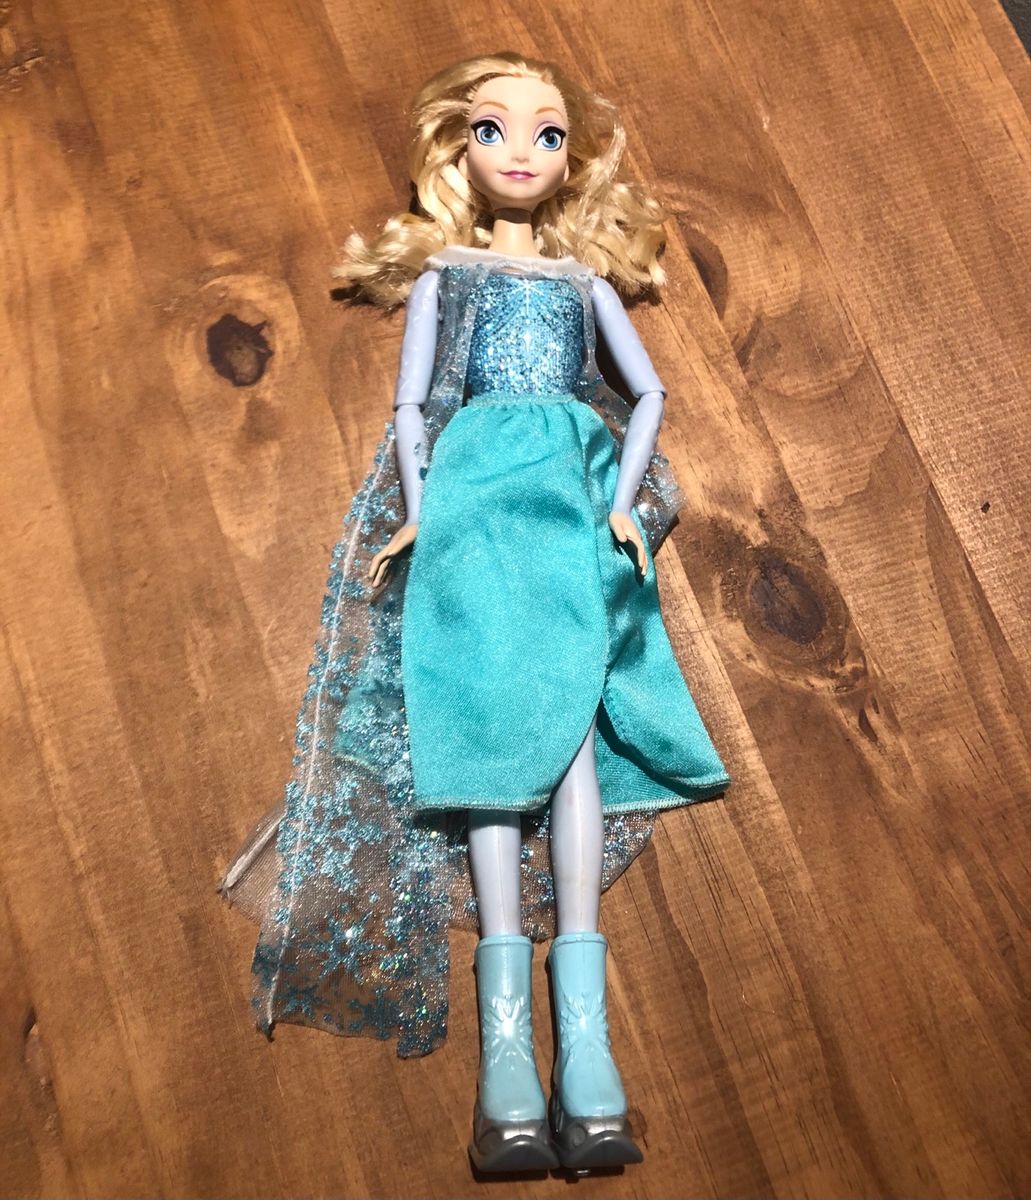 Boneca Frozen Elsa Patinadora - Mattel Cmt84